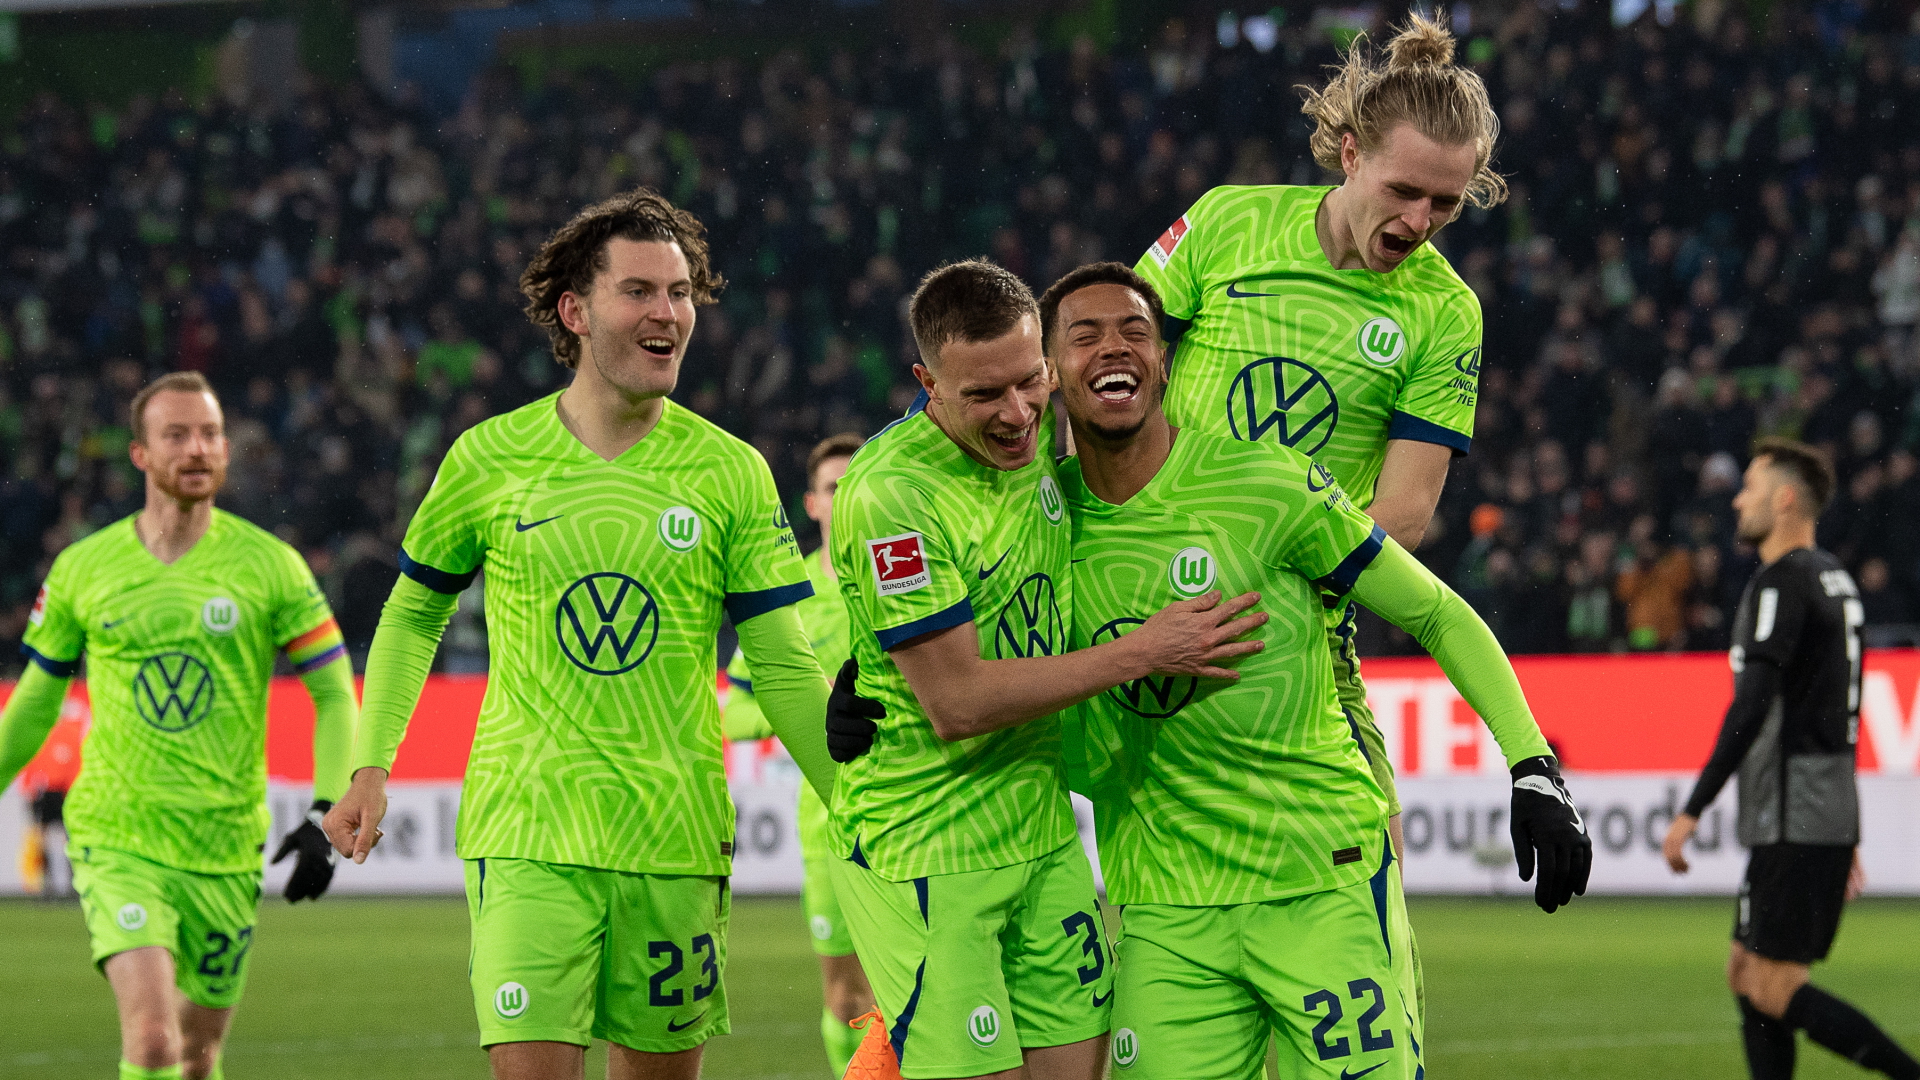 Jubelnde Spieler des VfL Wolfsburg nach einem Tor im Bundesligaspiel gegen den SC Freiburg | dpa